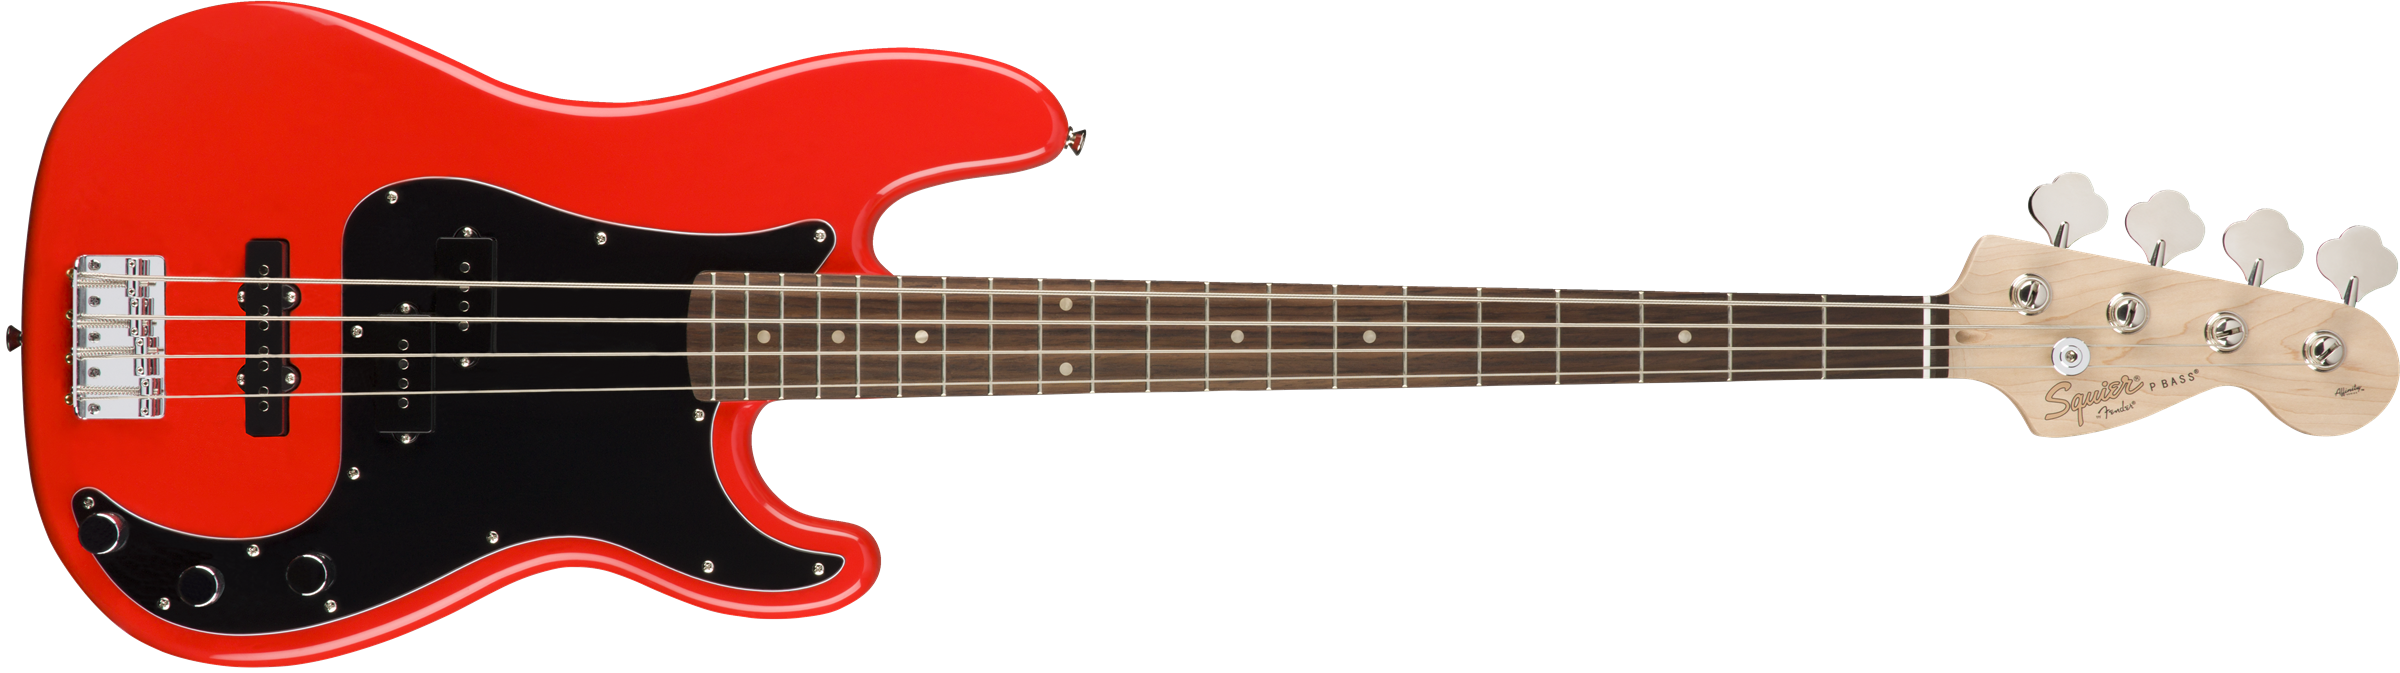 Squier Precision Bass Affinity Series Pj (lau) - Race Red - Bajo eléctrico de cuerpo sólido - Variation 1